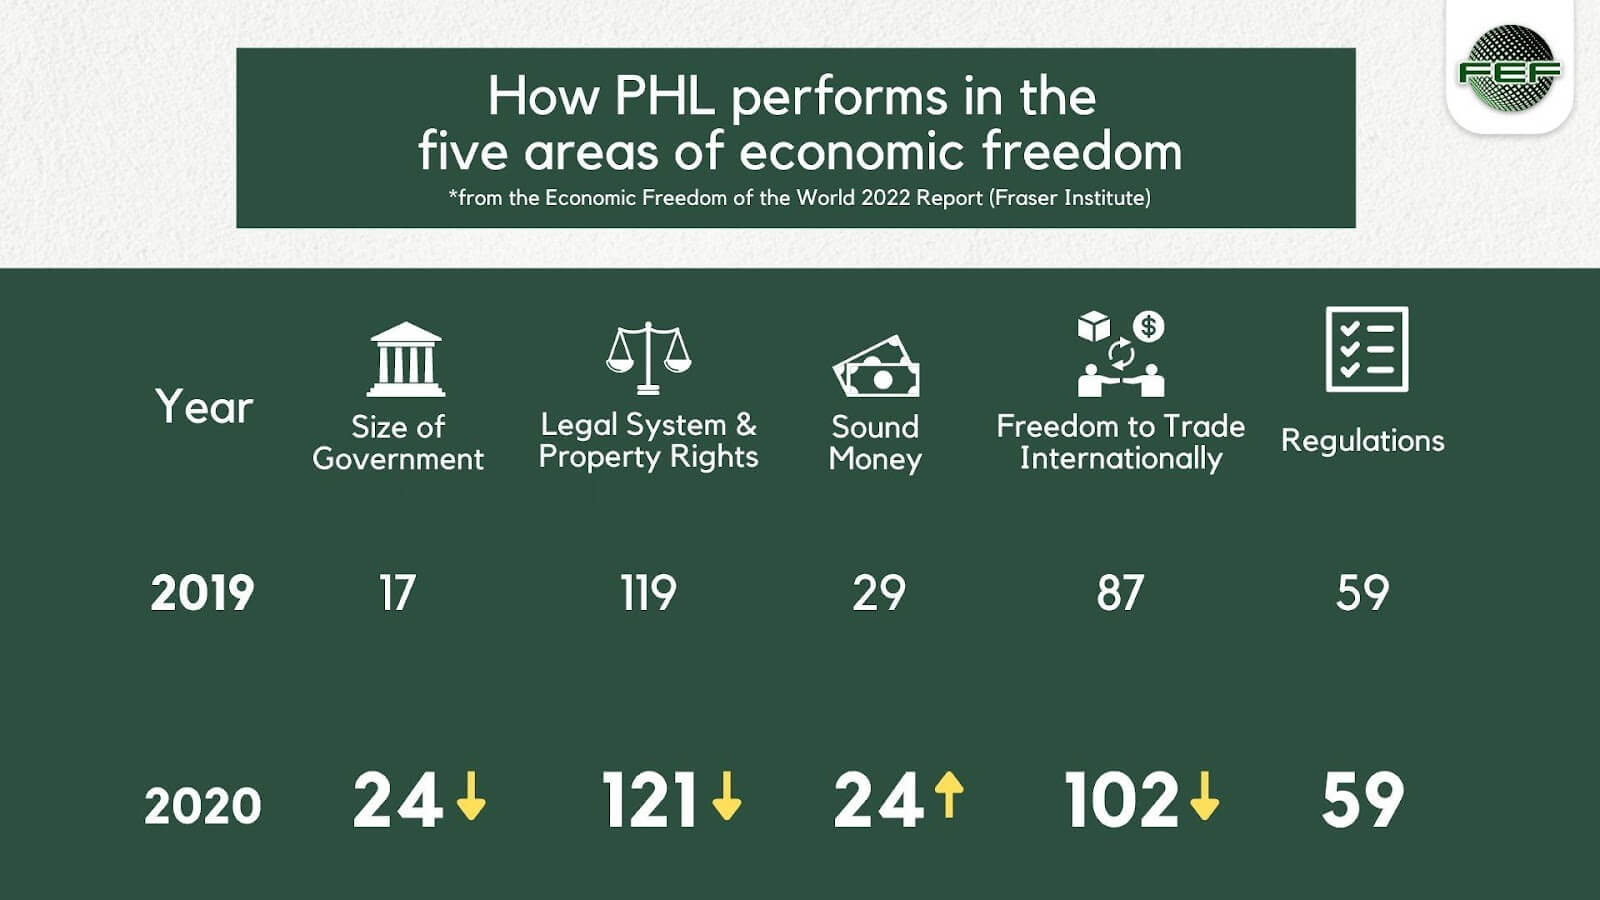 Philippines’ economic freedom rankings